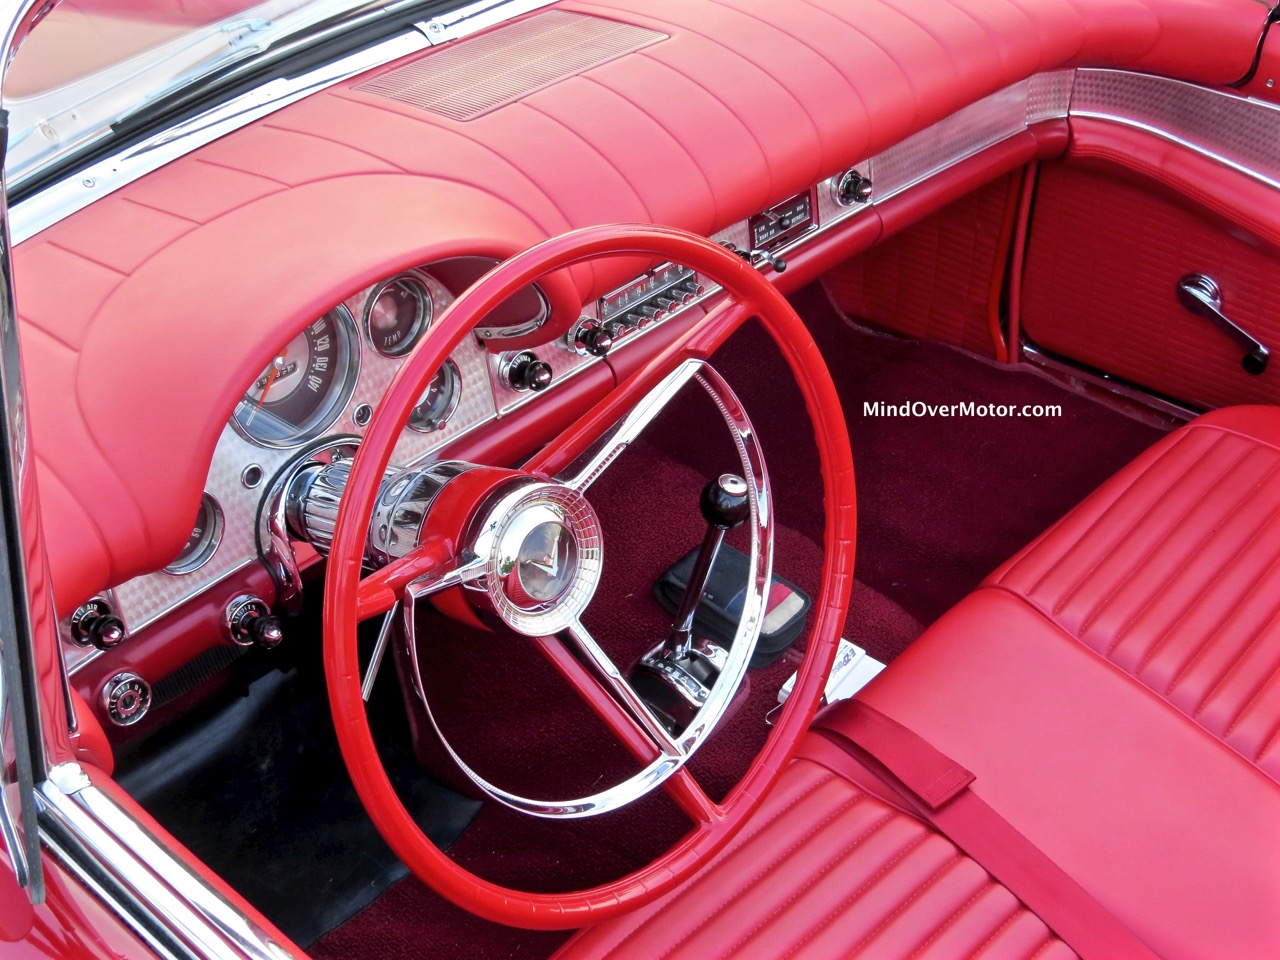 1957 Ford Thunderbird Interior